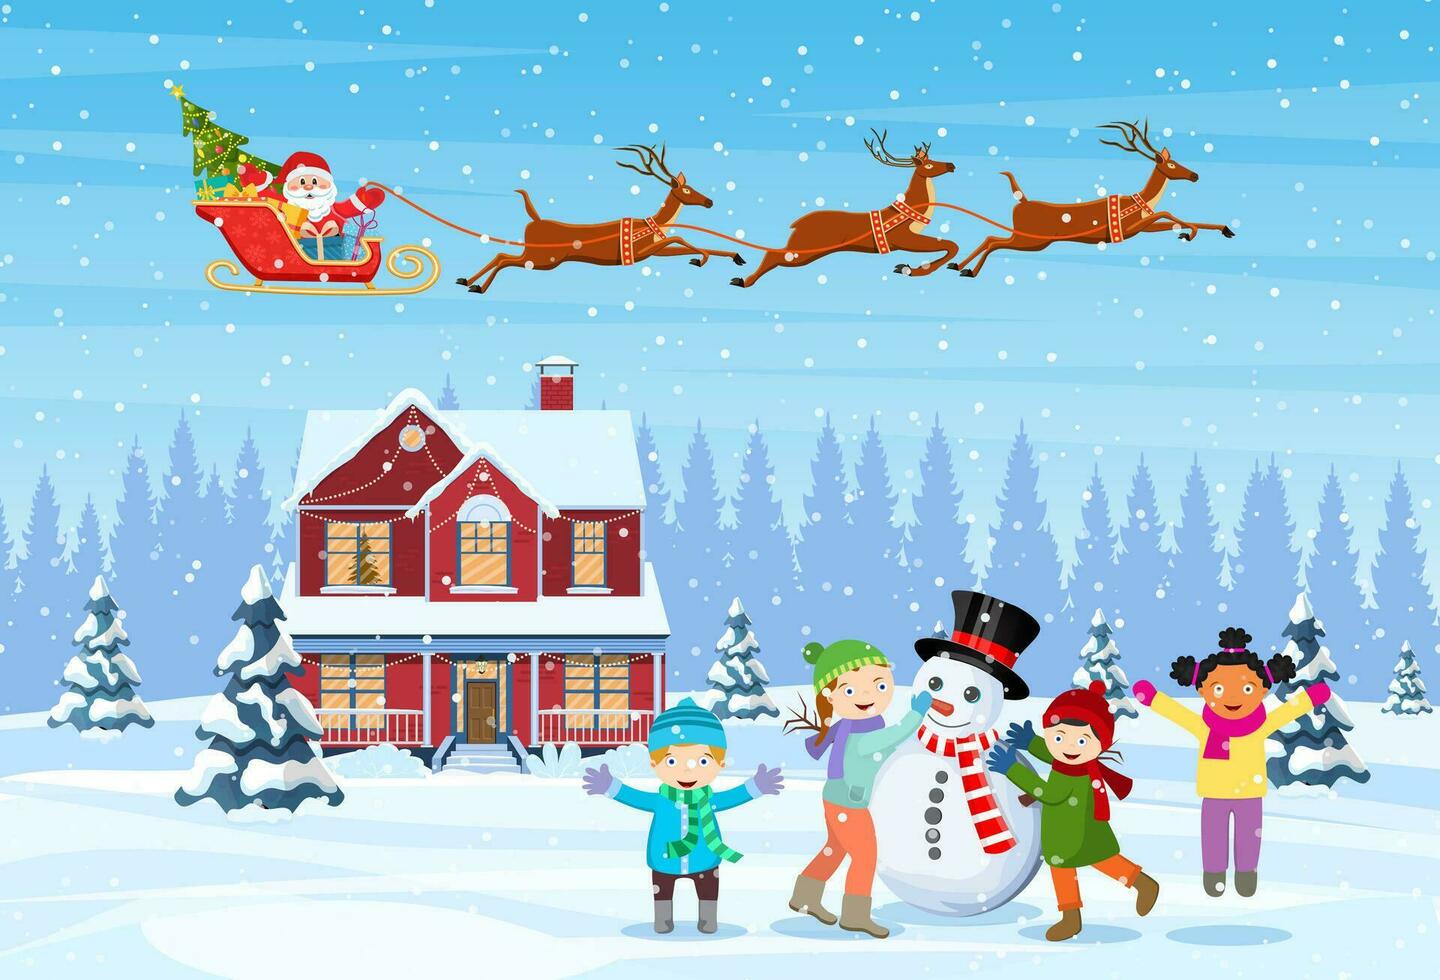 contento nuevo año y alegre Navidad saludo tarjeta. Navidad paisaje. niños edificio muñeco de nieve. invierno vacaciones. Papa Noel claus con ciervos en cielo. vector ilustración en plano estilo